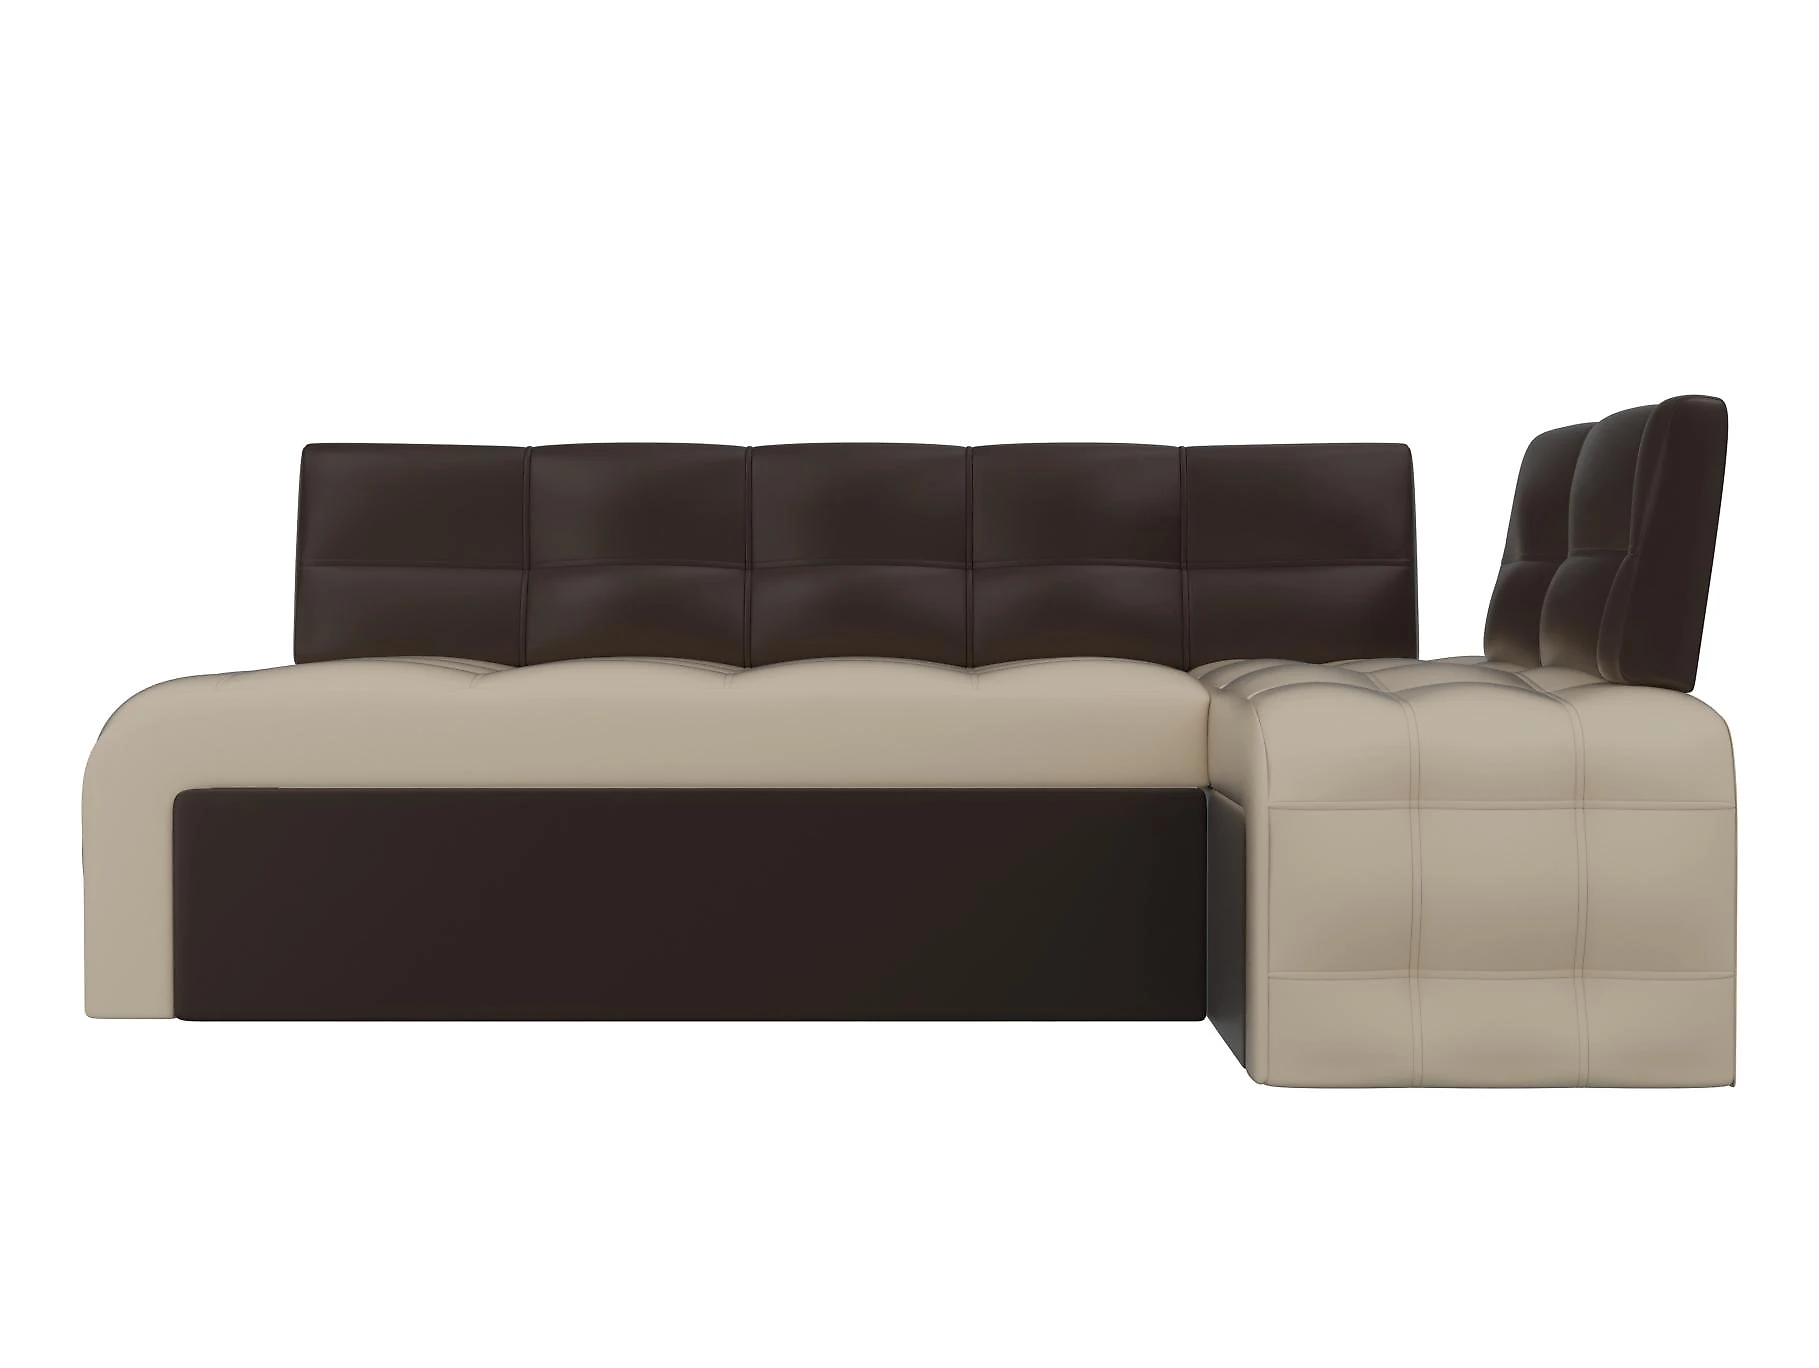  диван на кухню со спальным местом Люксор Дизайн 2